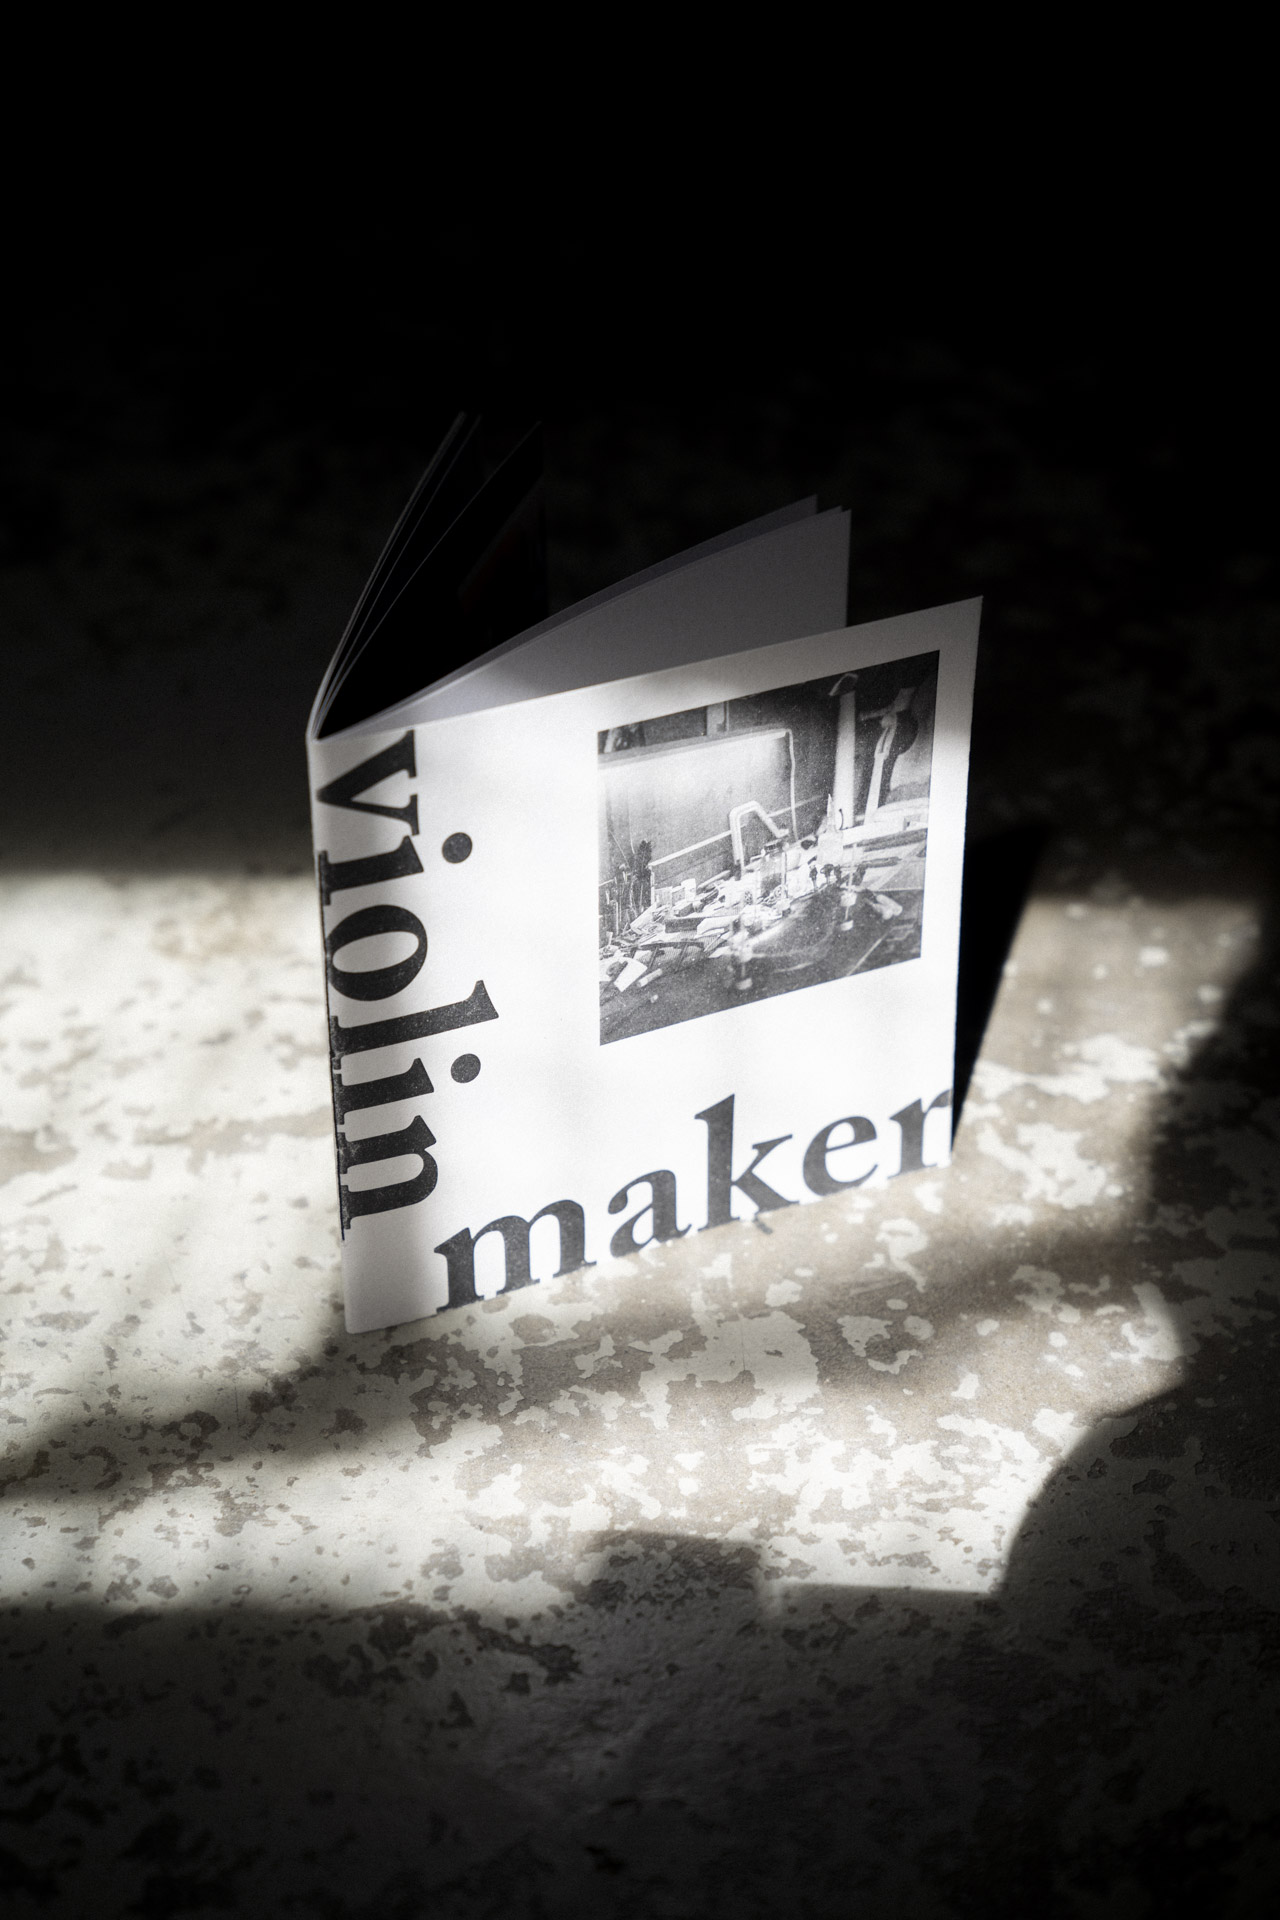 Umschlag des Violin Maker Fotobuch auf einem rustikalen Steinboden mit Schatten.